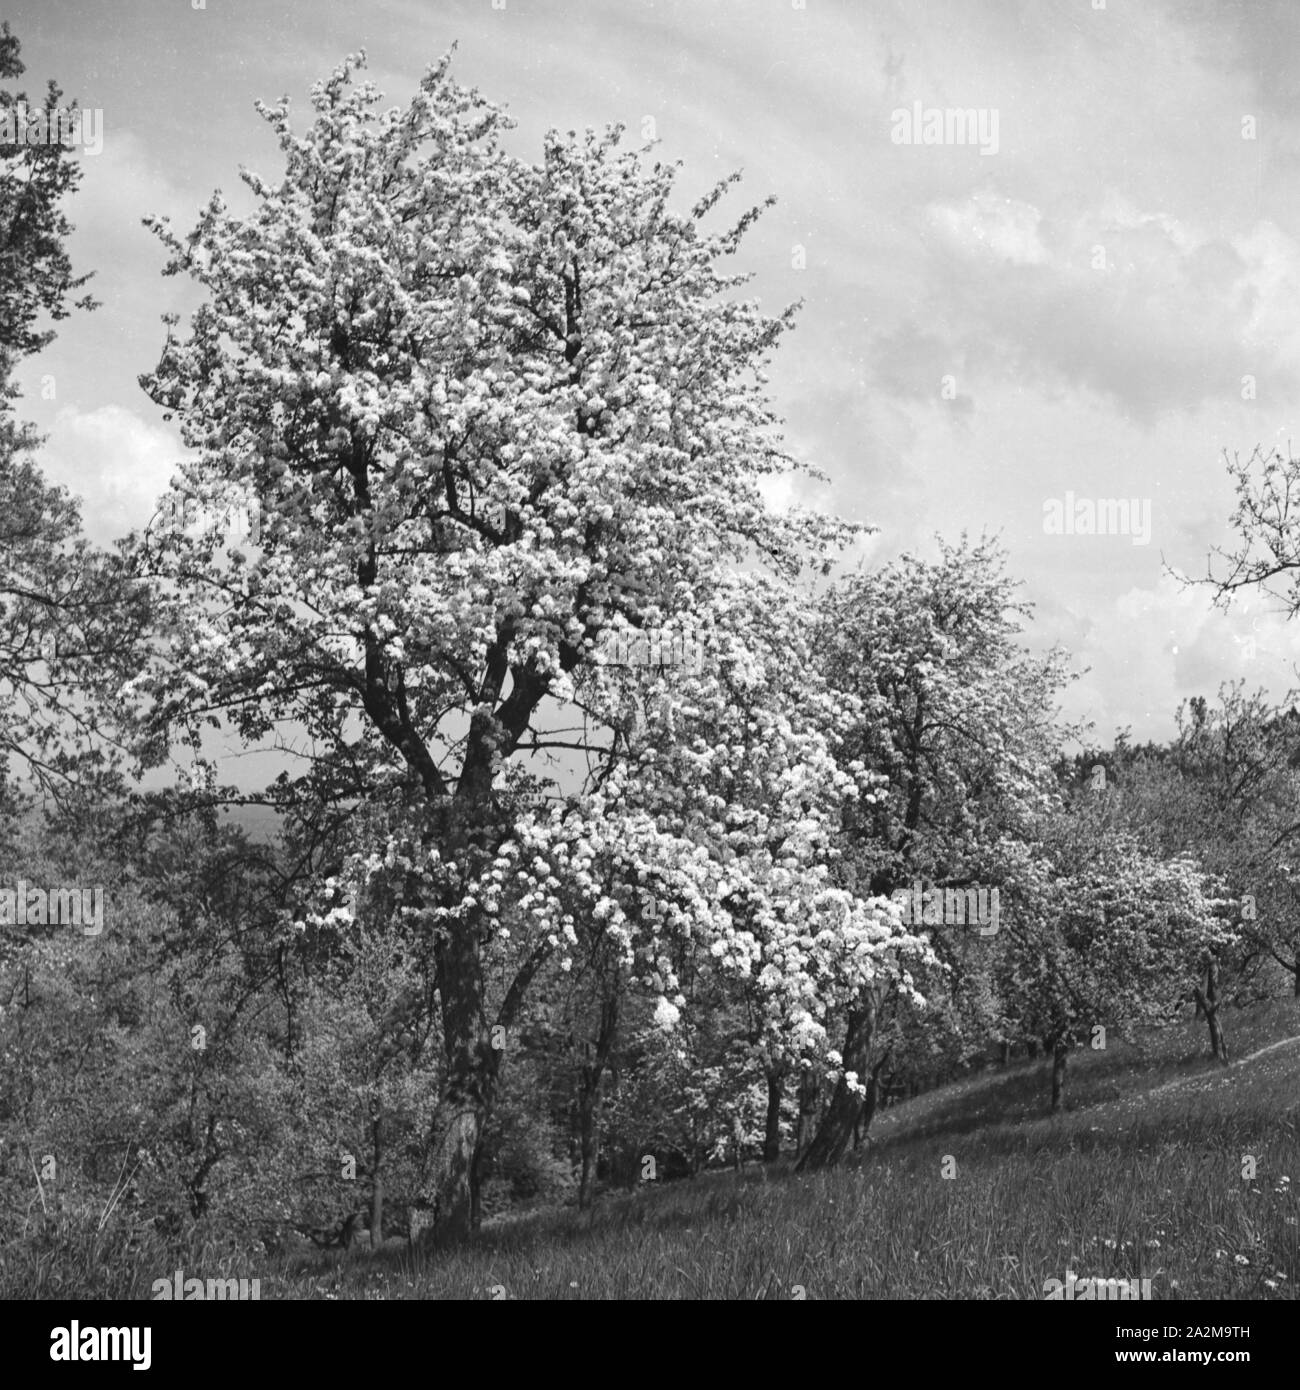 Blühende Bäume im Frühling, Deutschland 1930er Jahre. La floraison des arbres au printemps, l'Allemagne des années 1930. Banque D'Images